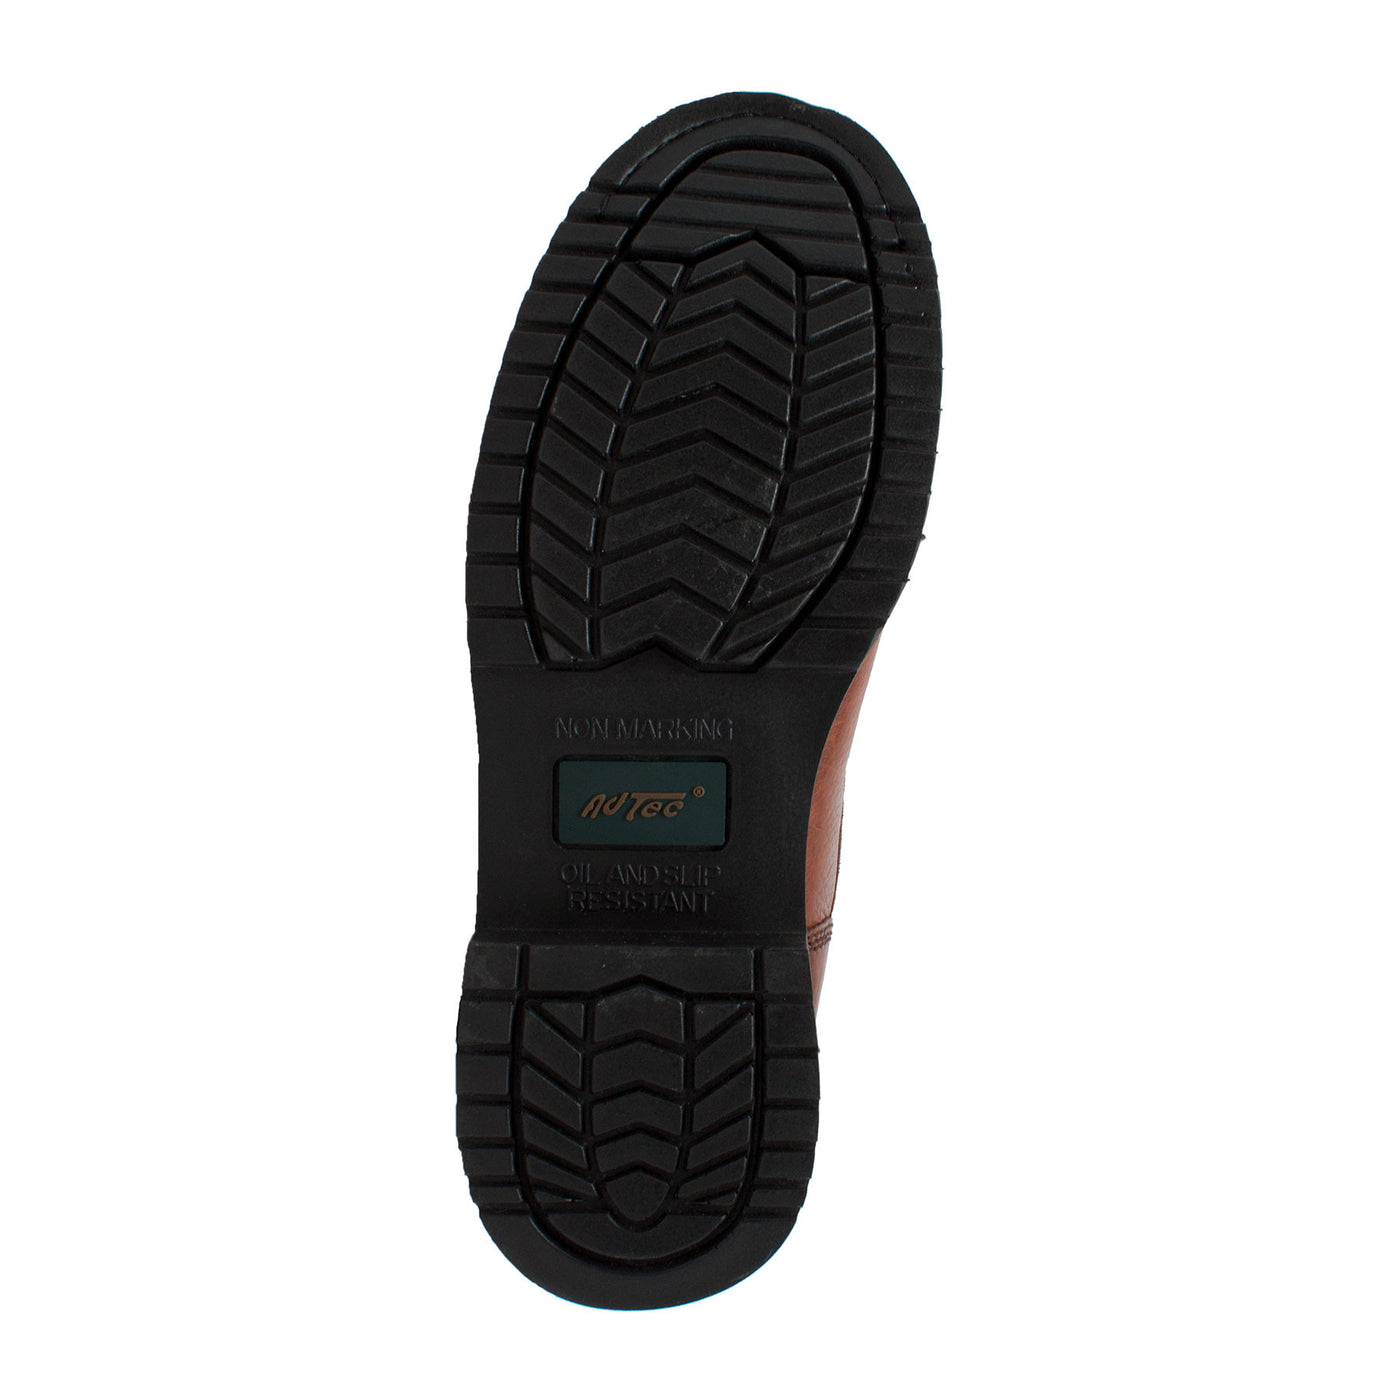 Men's 8" Brown Work Boot - 1623 - Shop Genuine Leather men & women's boots online | AdTecFootWear